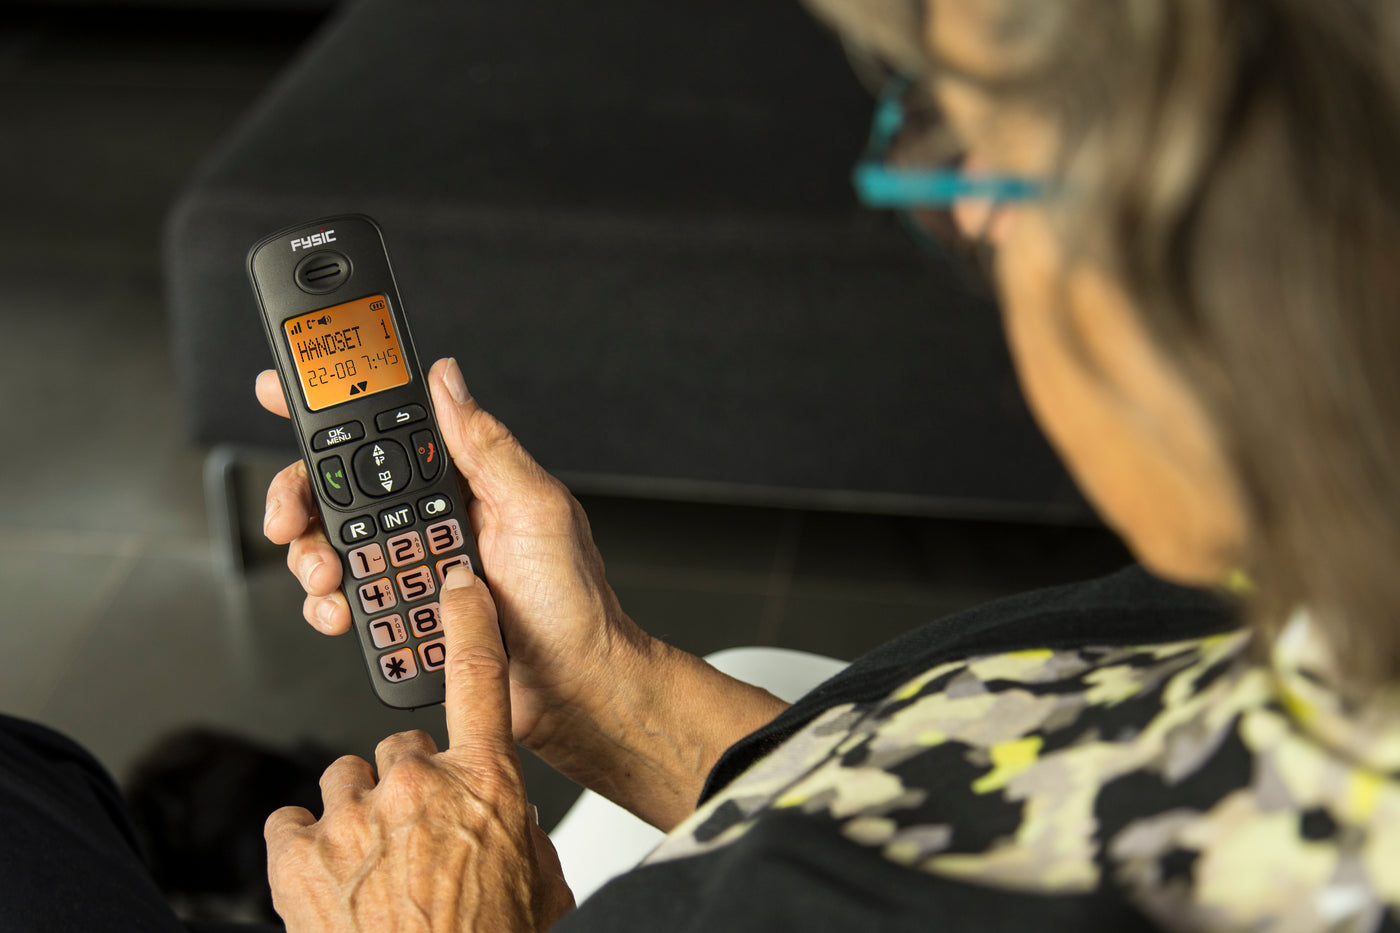 Fysic FX-5500 - DECT-Telefon für Senioren mit großen Tasten und 1 Mobilteil, Schwarz